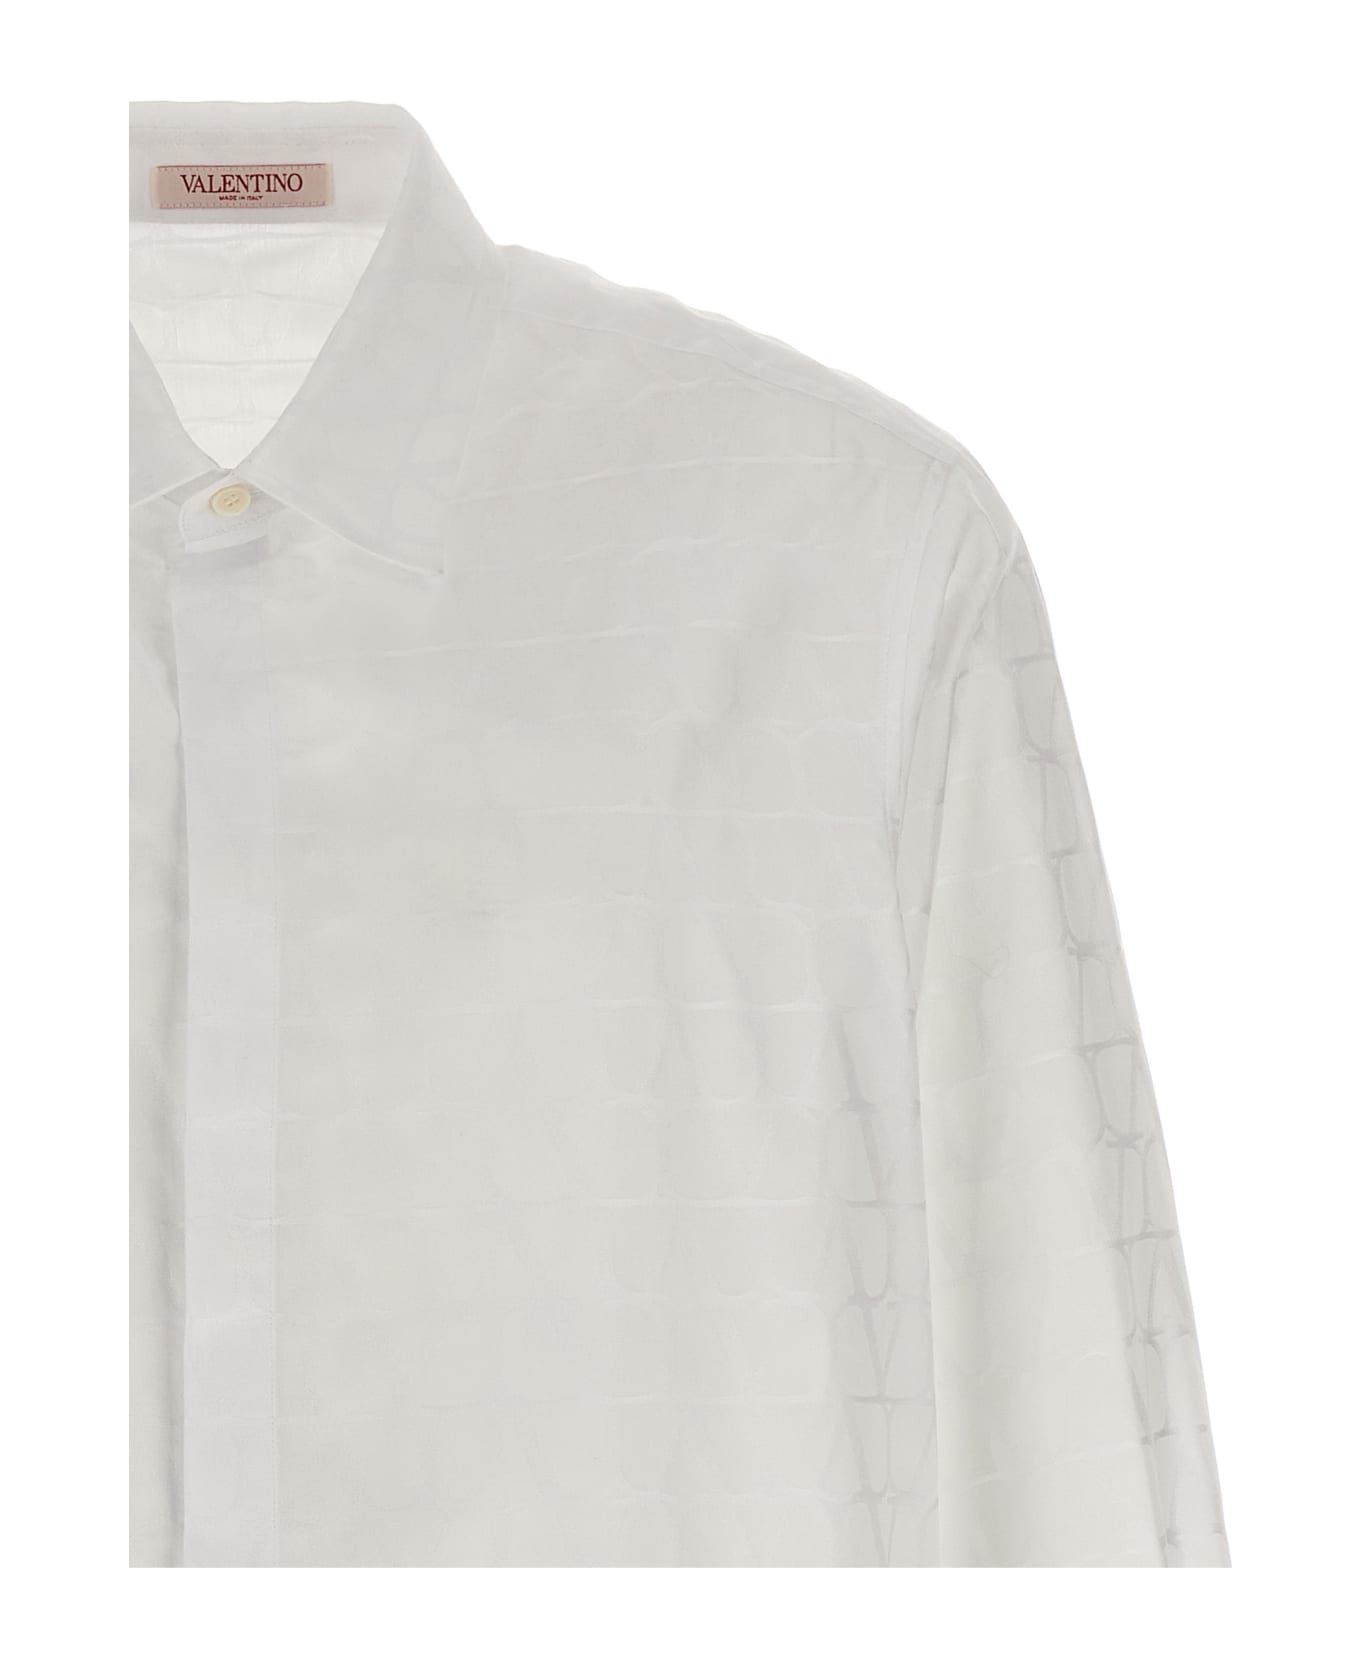 Valentino Garavani Valentino 'toile Iconographe' Shirt - White シャツ